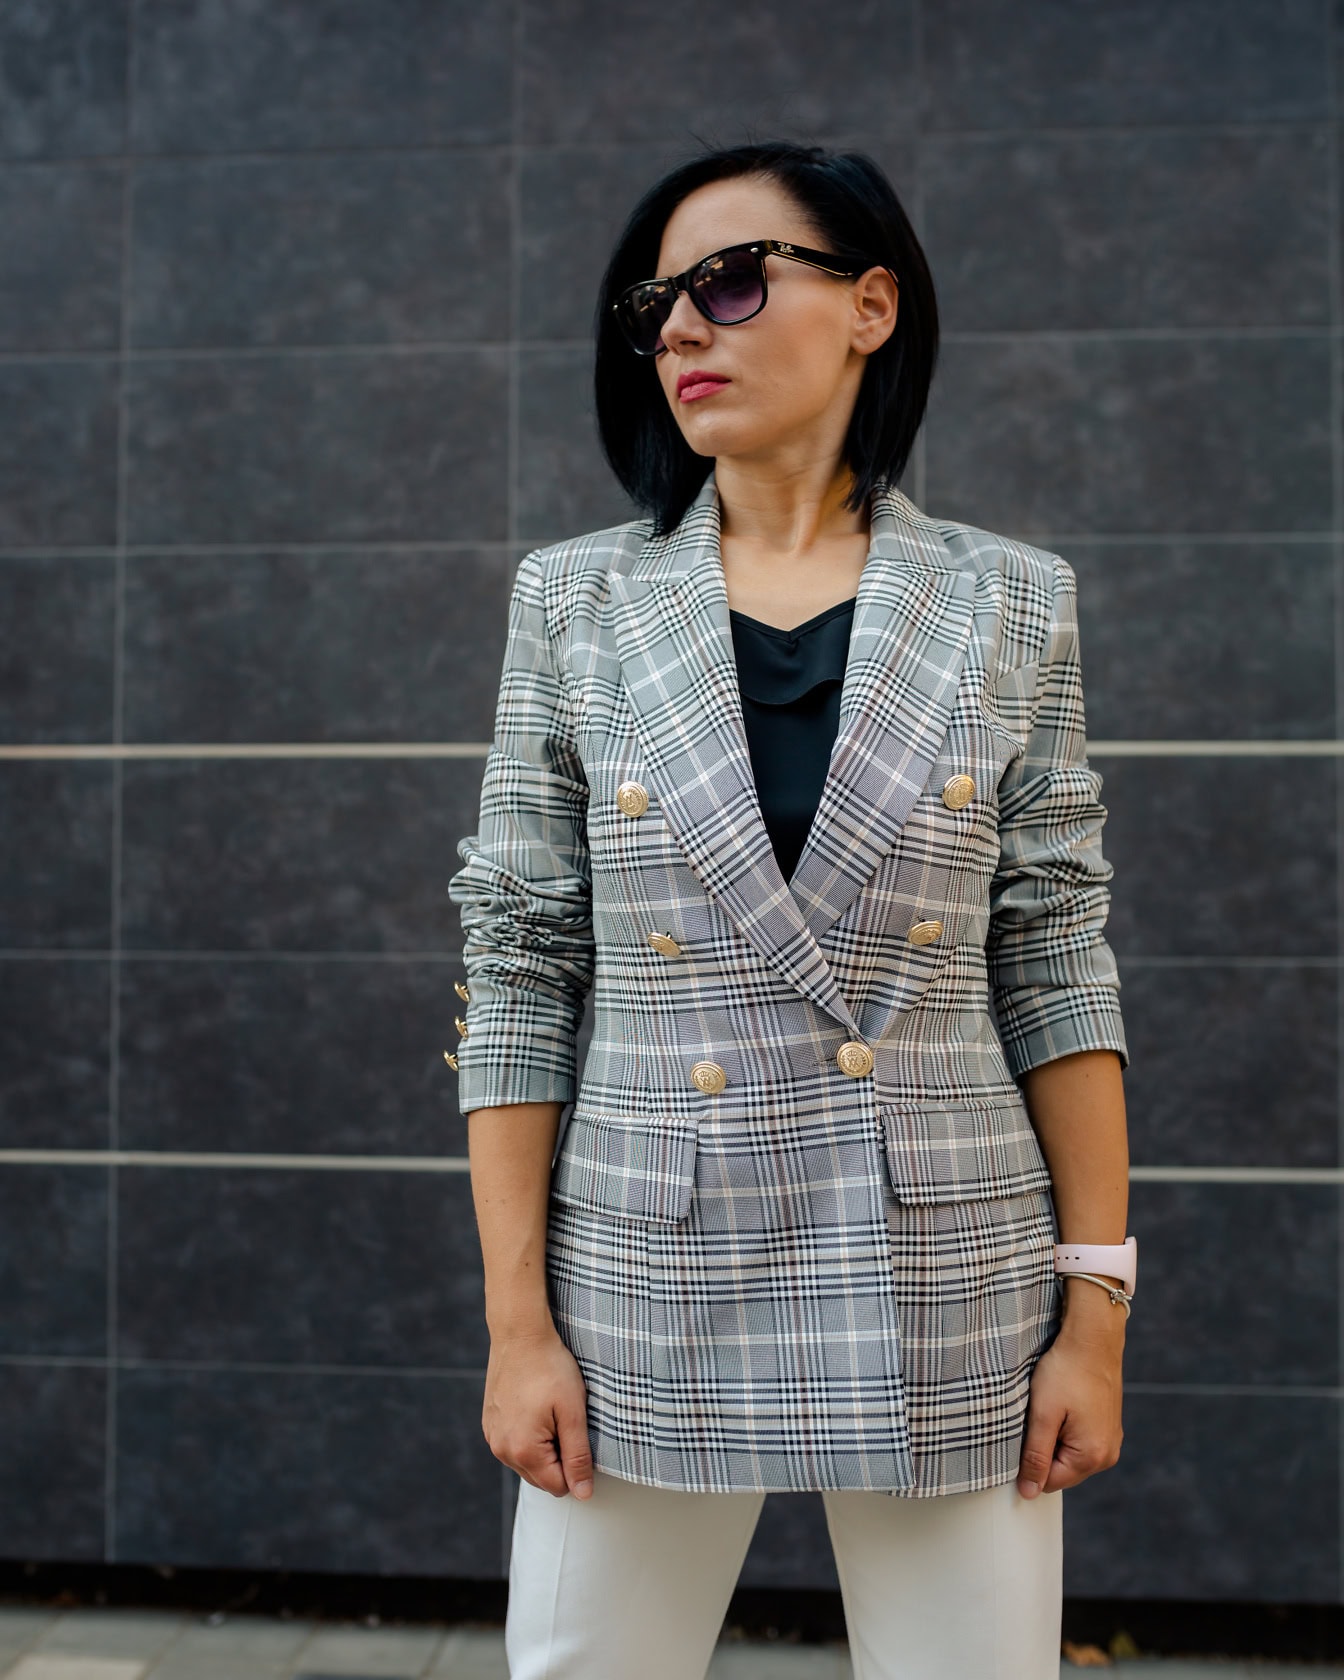 นักธุรกิจหญิงโพสท่าขณะสวมแว่นกันแดดและเสื้อเบลเซอร์ลายสก๊อต